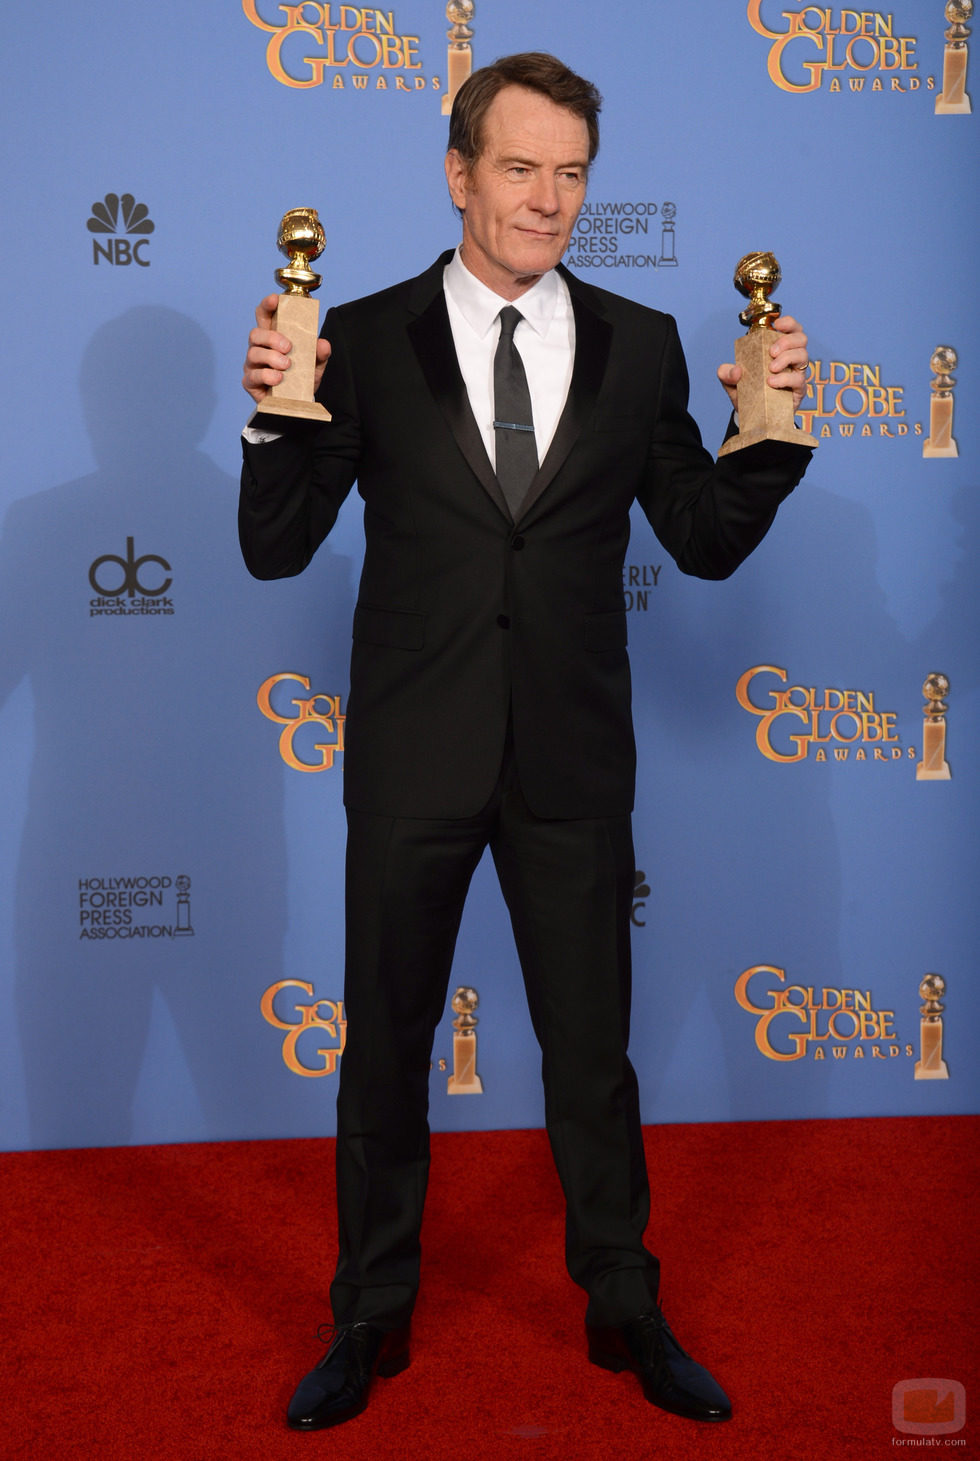 Bryan Cranston, ganador del Globo de Oro 2014 al Mejor Actor de Drama